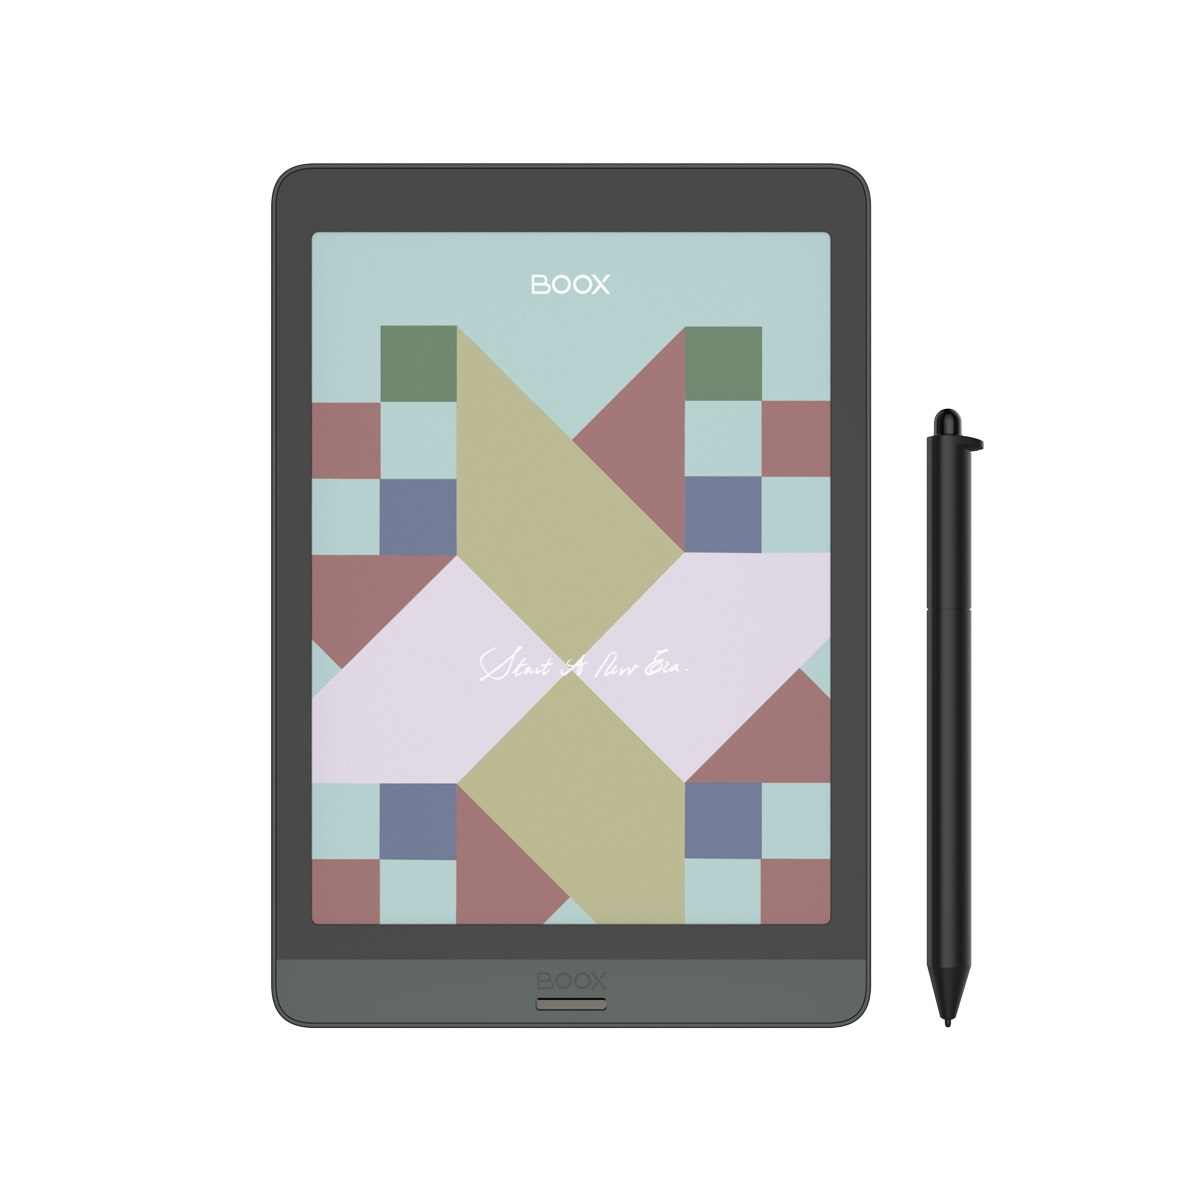 Onyx Boox Nova 3 Color to najszybszy czytnik ebooków z ekranem 7,8 cala